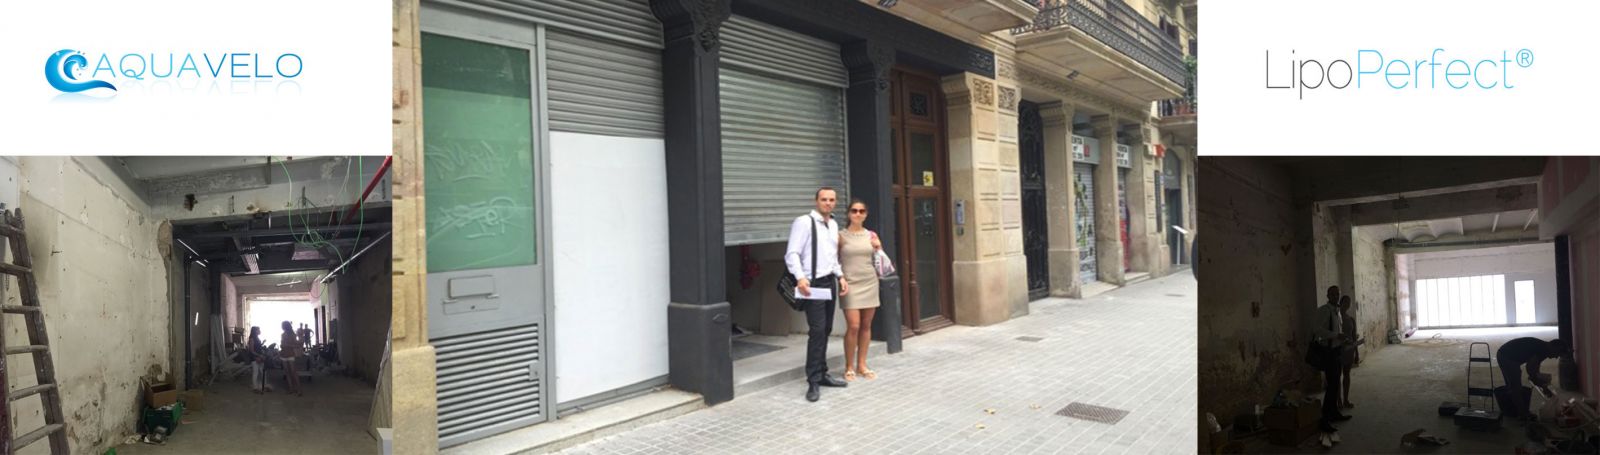 Ouverture prochaine Aquavelo et Lipo Perfect à Barcelonne ( Espagne)